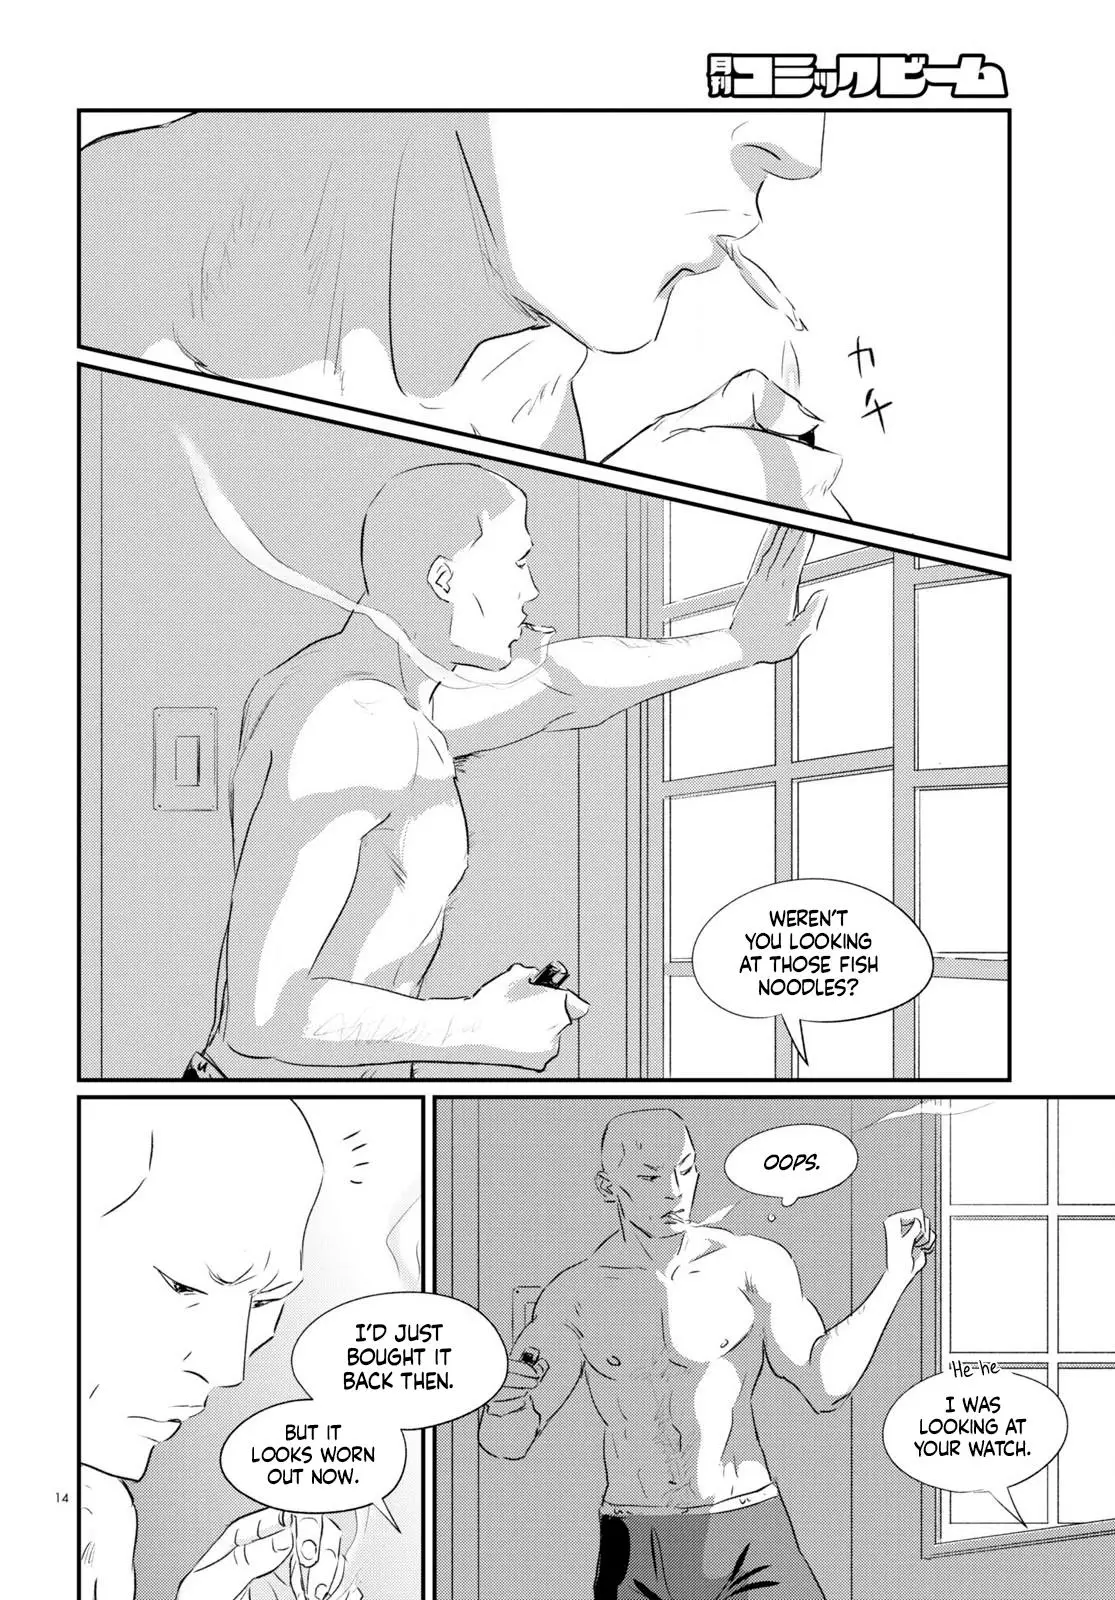 Fish - 7 page 13-dfa3f1f9